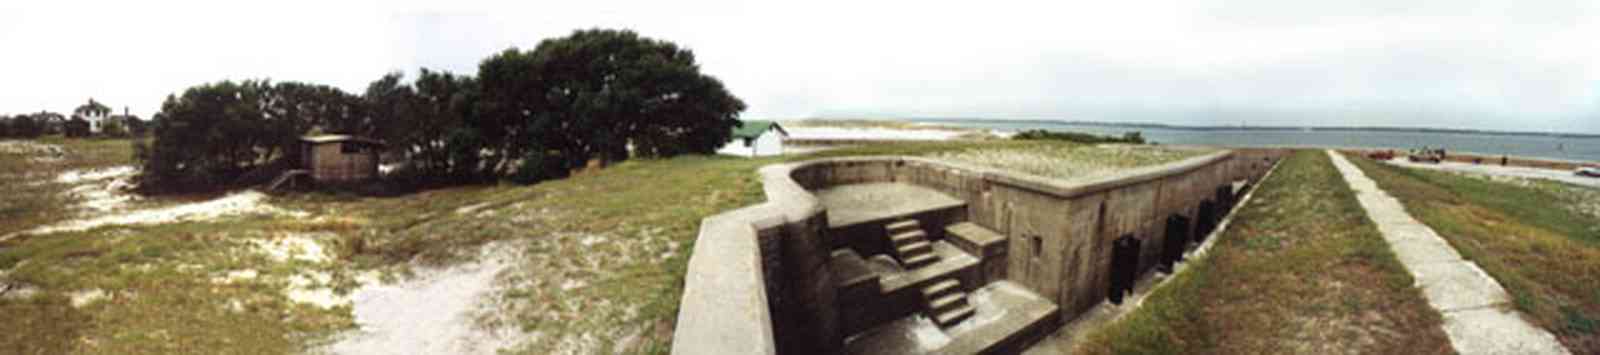 Gulf-Islands-National-Seashore:-Fort-Pickens:-Fortifications_8a.jpg:  battle, sea wall, dunes, oak tree